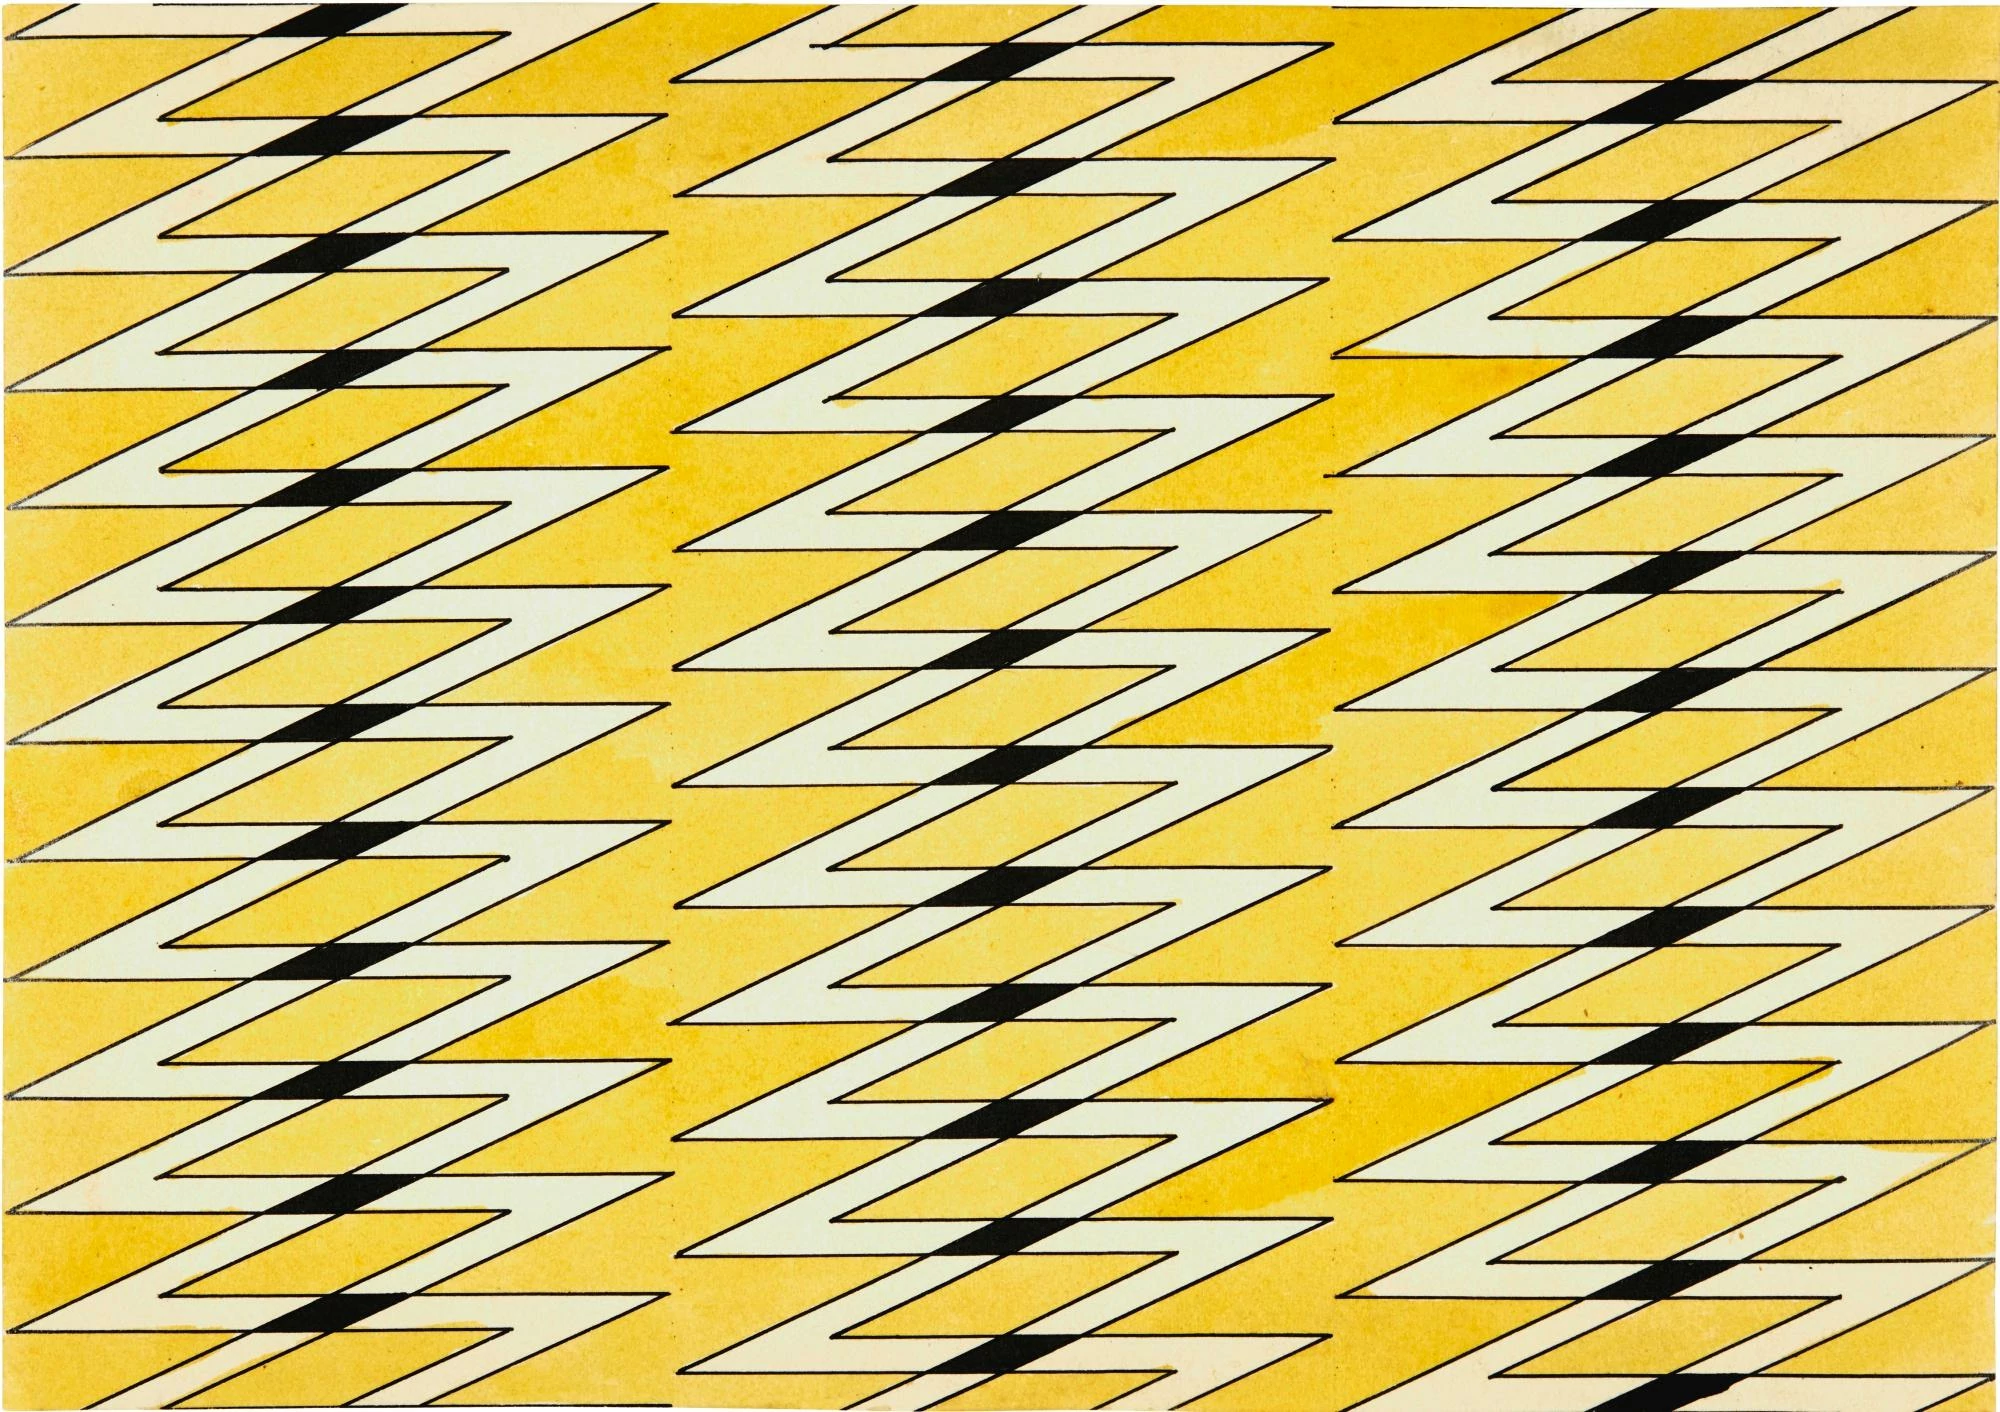 Textile Design in Yellow and Black, Varvara Stepanova